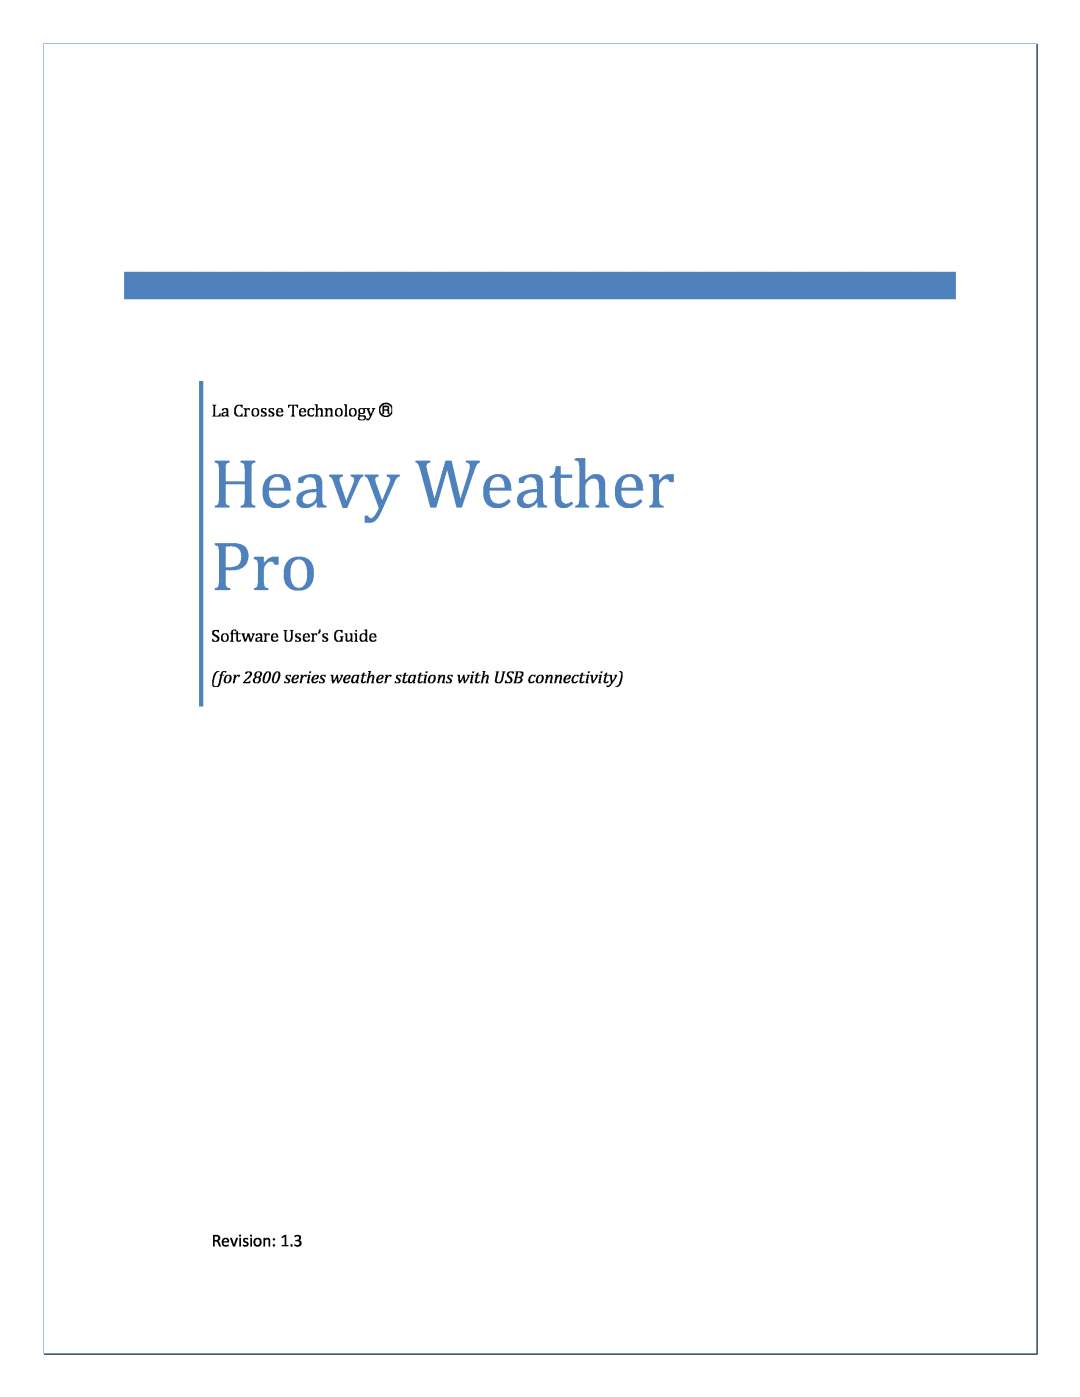 La Crosse Technology 2800 manual Heavy Weather Pro, La Crosse Technology, Software User’s Guide 